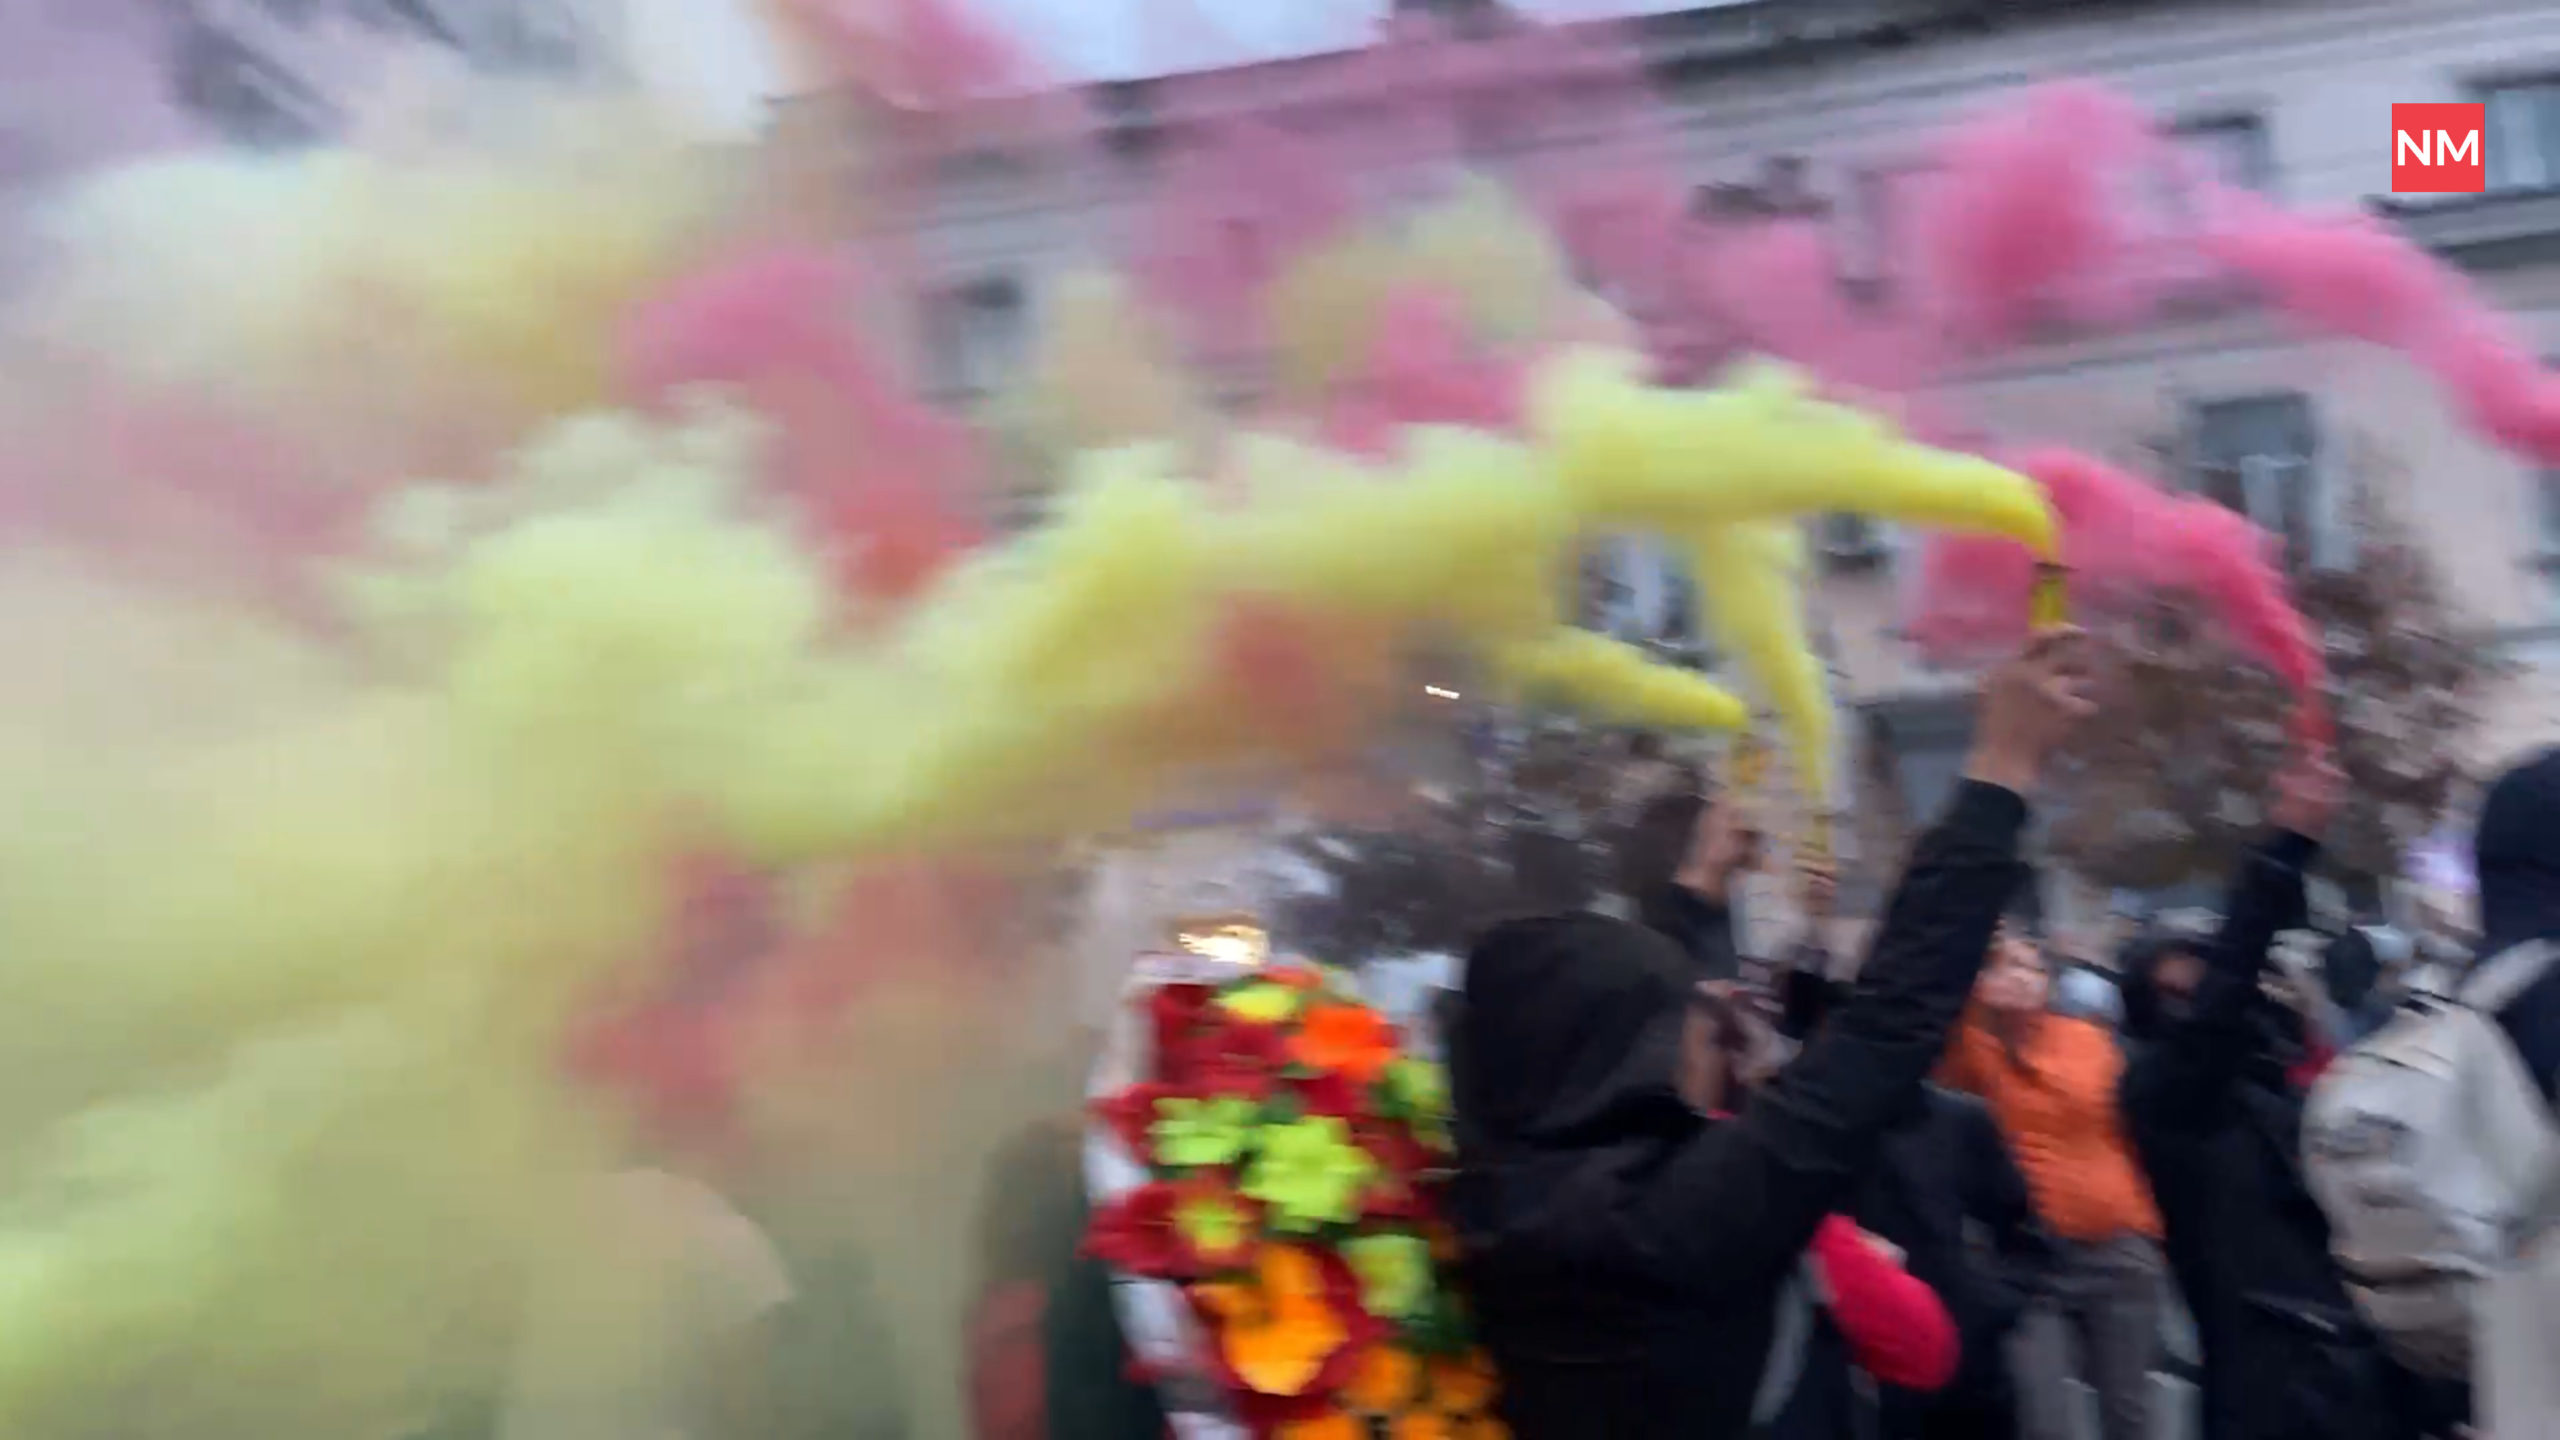 FOTO/VIDEO În centrul Chișinăului, protestatarii au aprins fumigene colorate. Poliția a intervenit